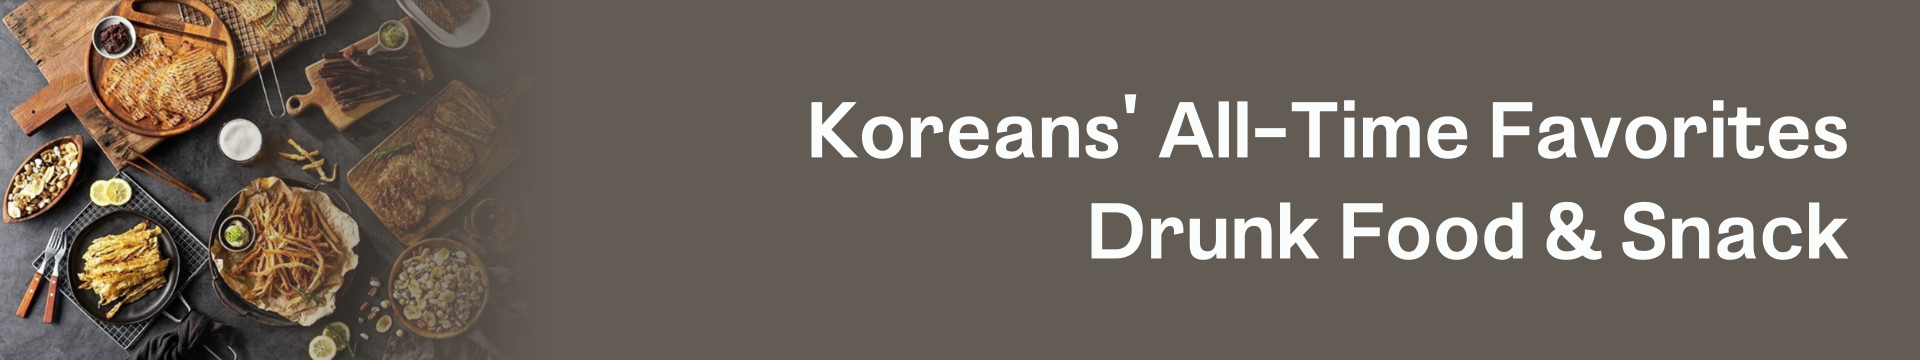 韓國食品-ko-others